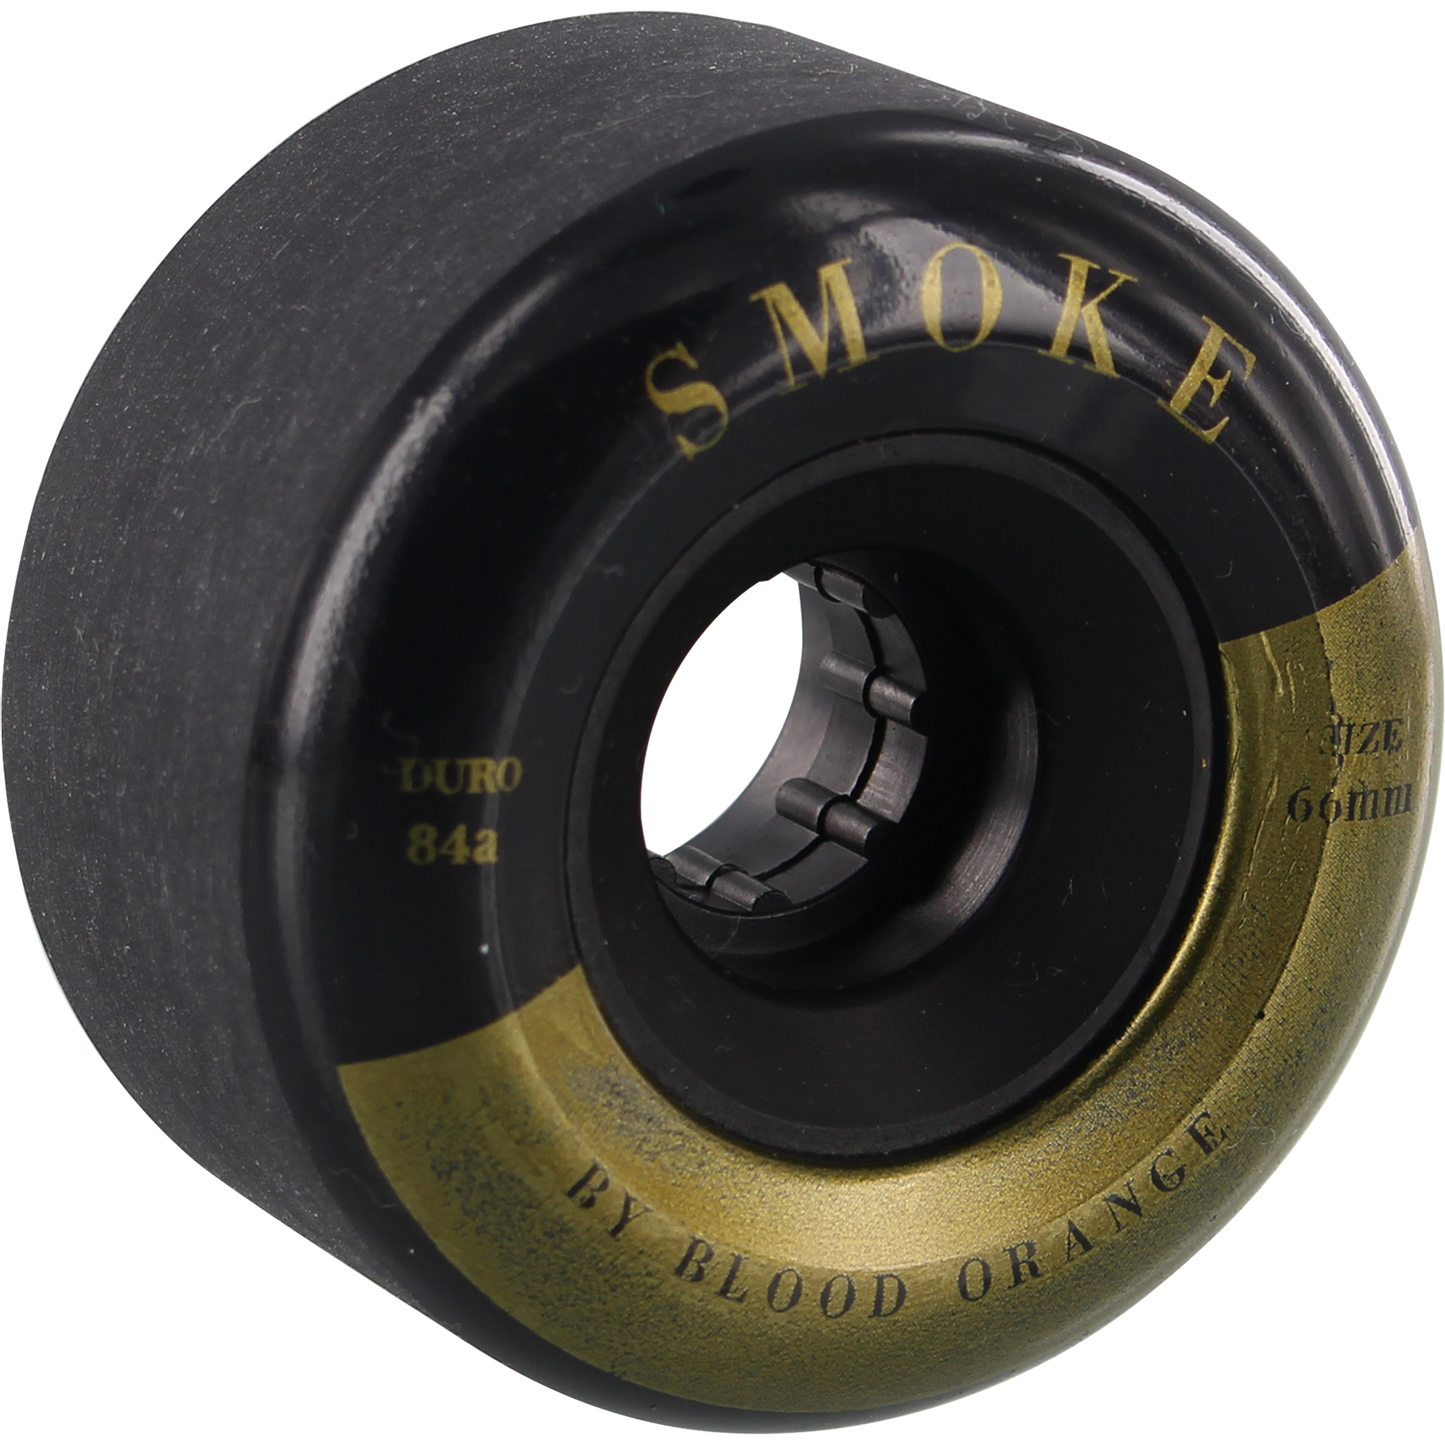 Blood Orange Smoke 66mm 84a Black/Gold Longboard Wheels (Set of 4)